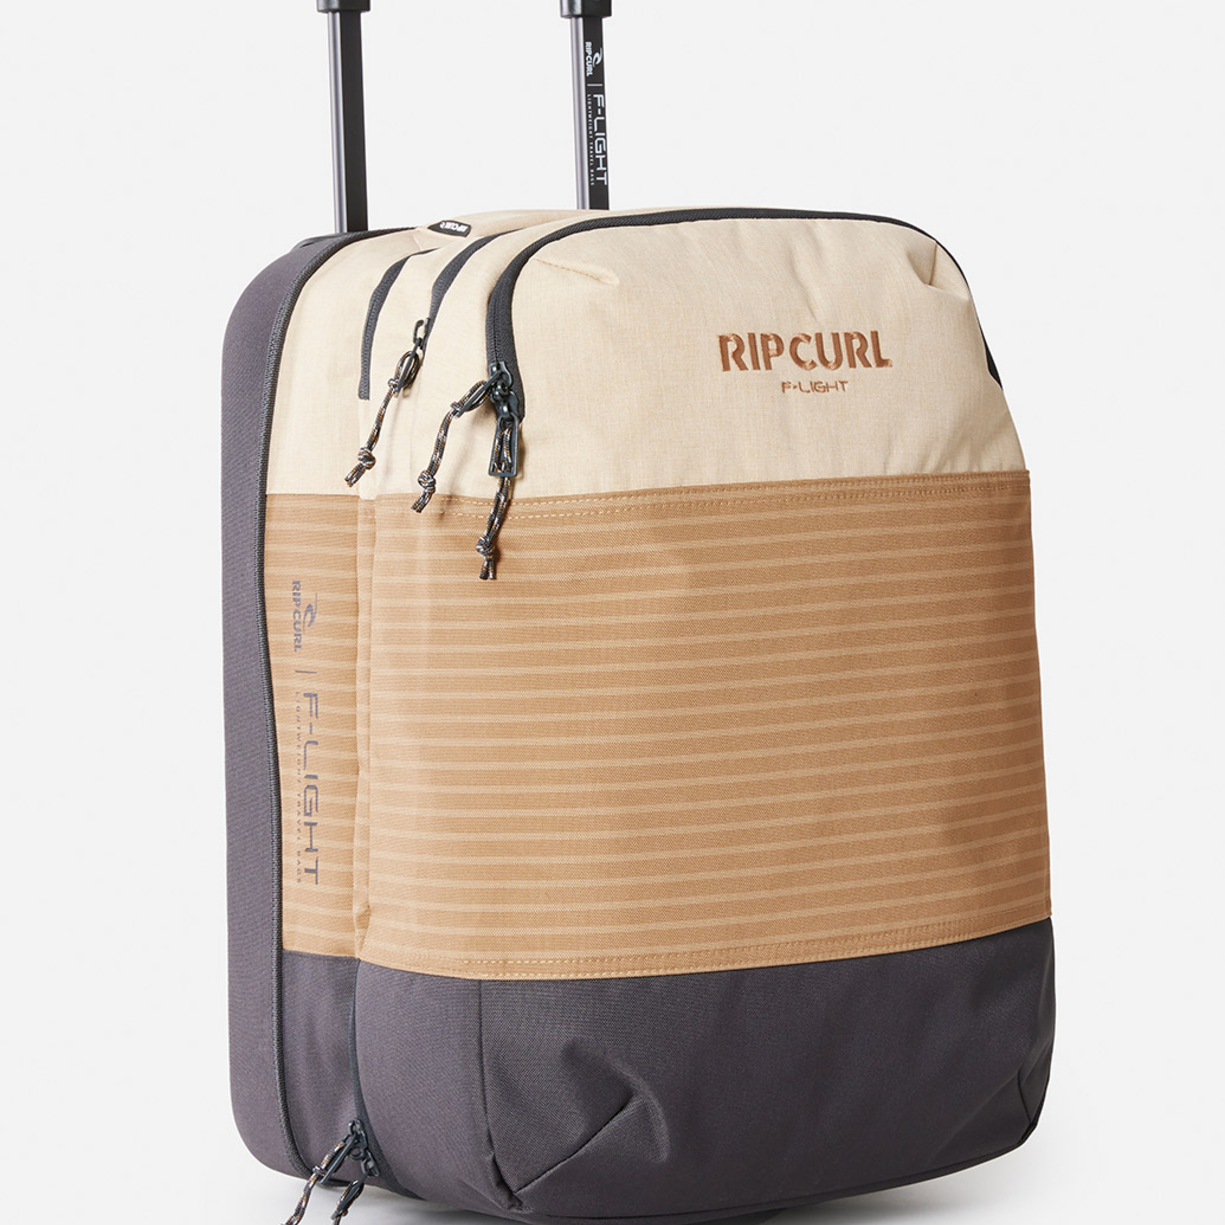 Ripcurl F-Light Cabin 35L Wheelie Bags